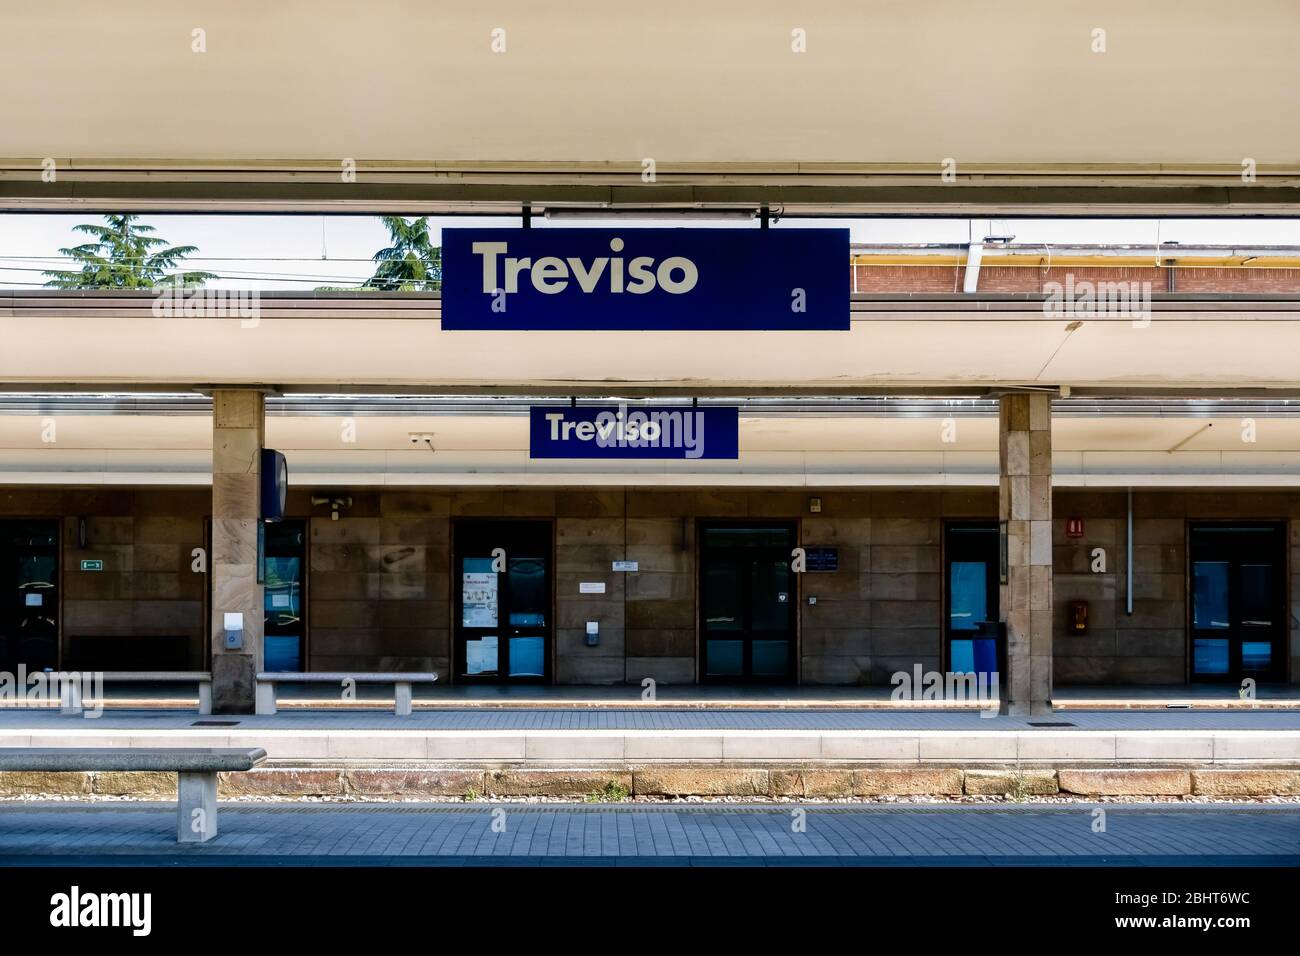 Voies de la station vide de Trévise, Vénétie, Italie. Gare du Nord-est italien avec personne. Banque D'Images